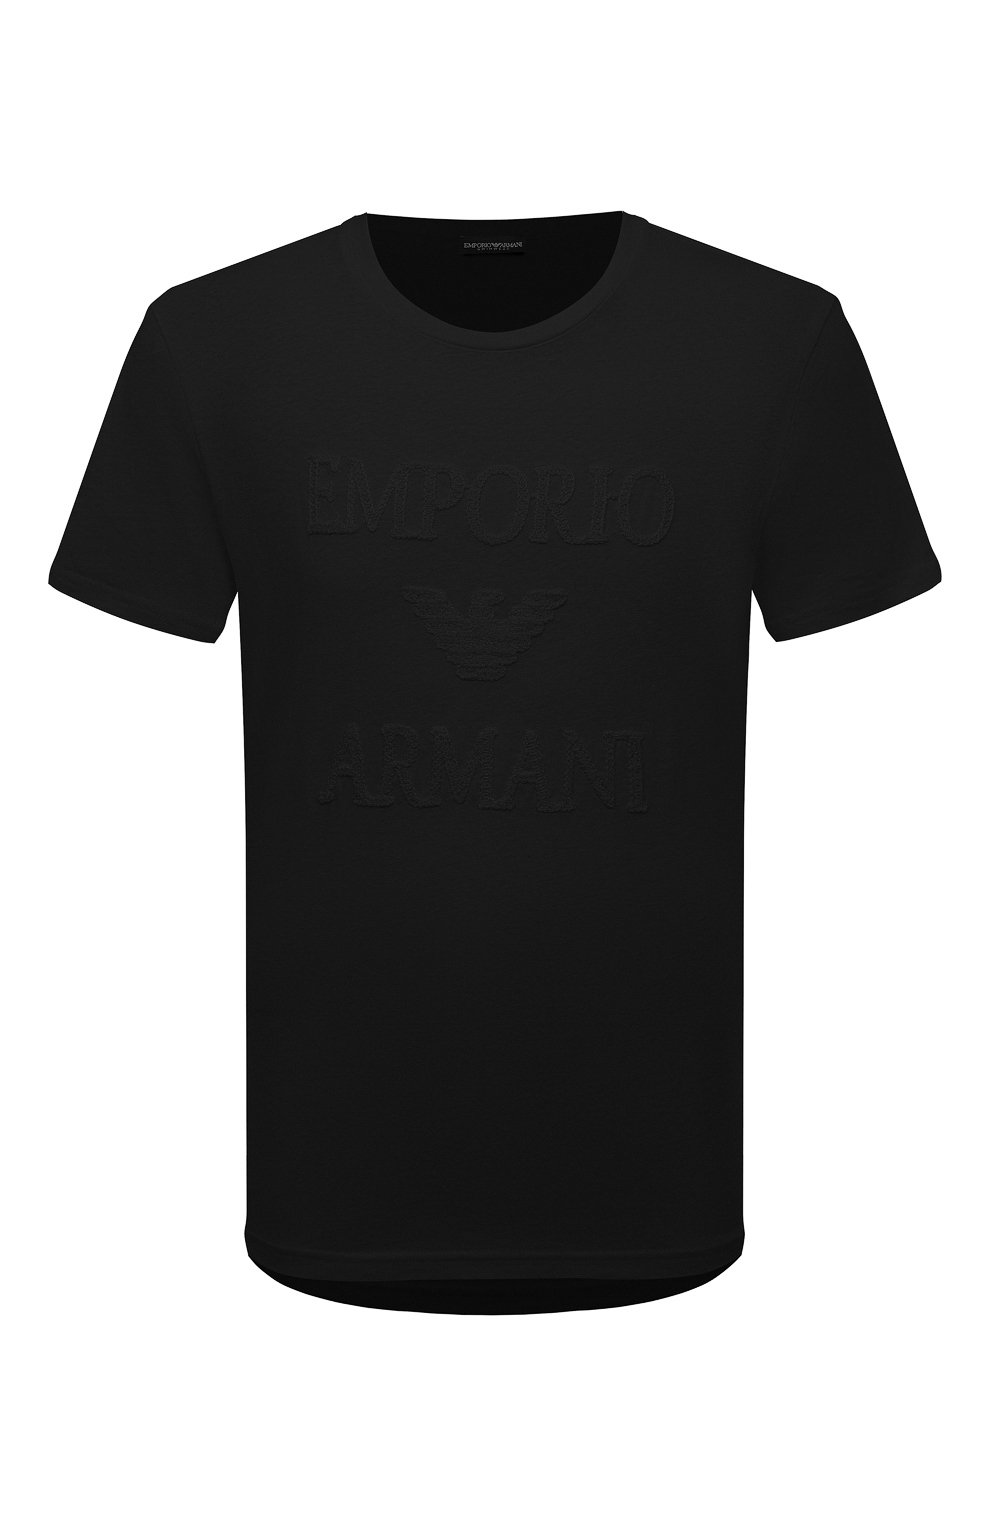 Хлопковая футболка Emporio Armani 211818/3R485, цвет чёрный, размер 50